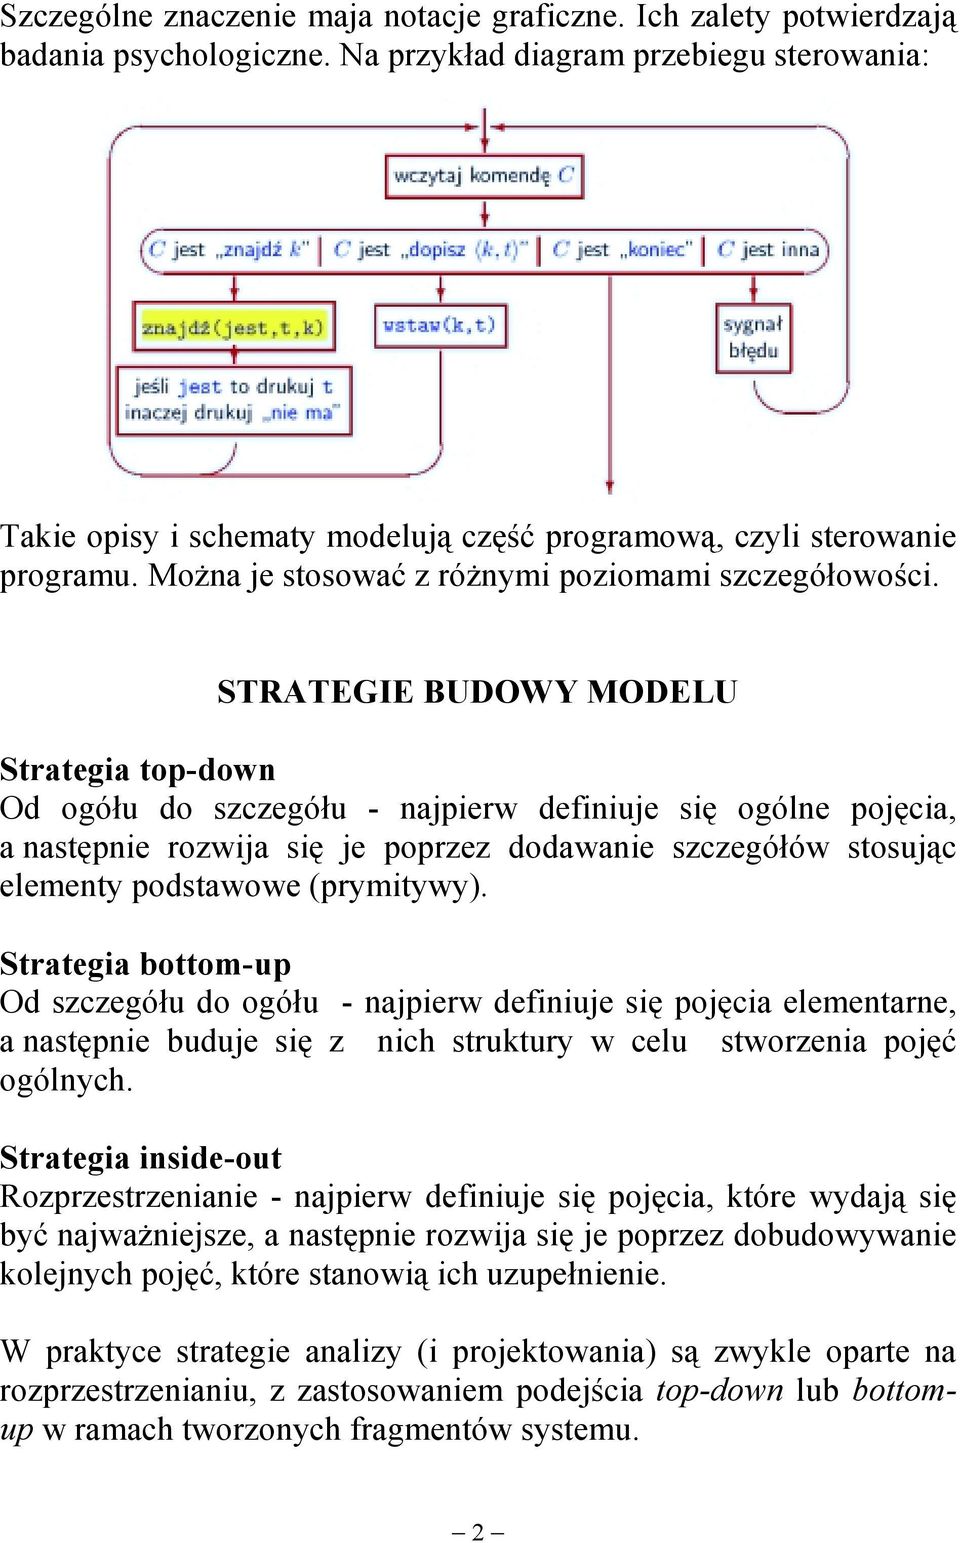 STRATEGIE BUDOWY MODELU Strategia top-down Od ogółu do szczegółu - najpierw definiuje się ogólne pojęcia, a następnie rozwija się je poprzez dodawanie szczegółów stosując elementy podstawowe